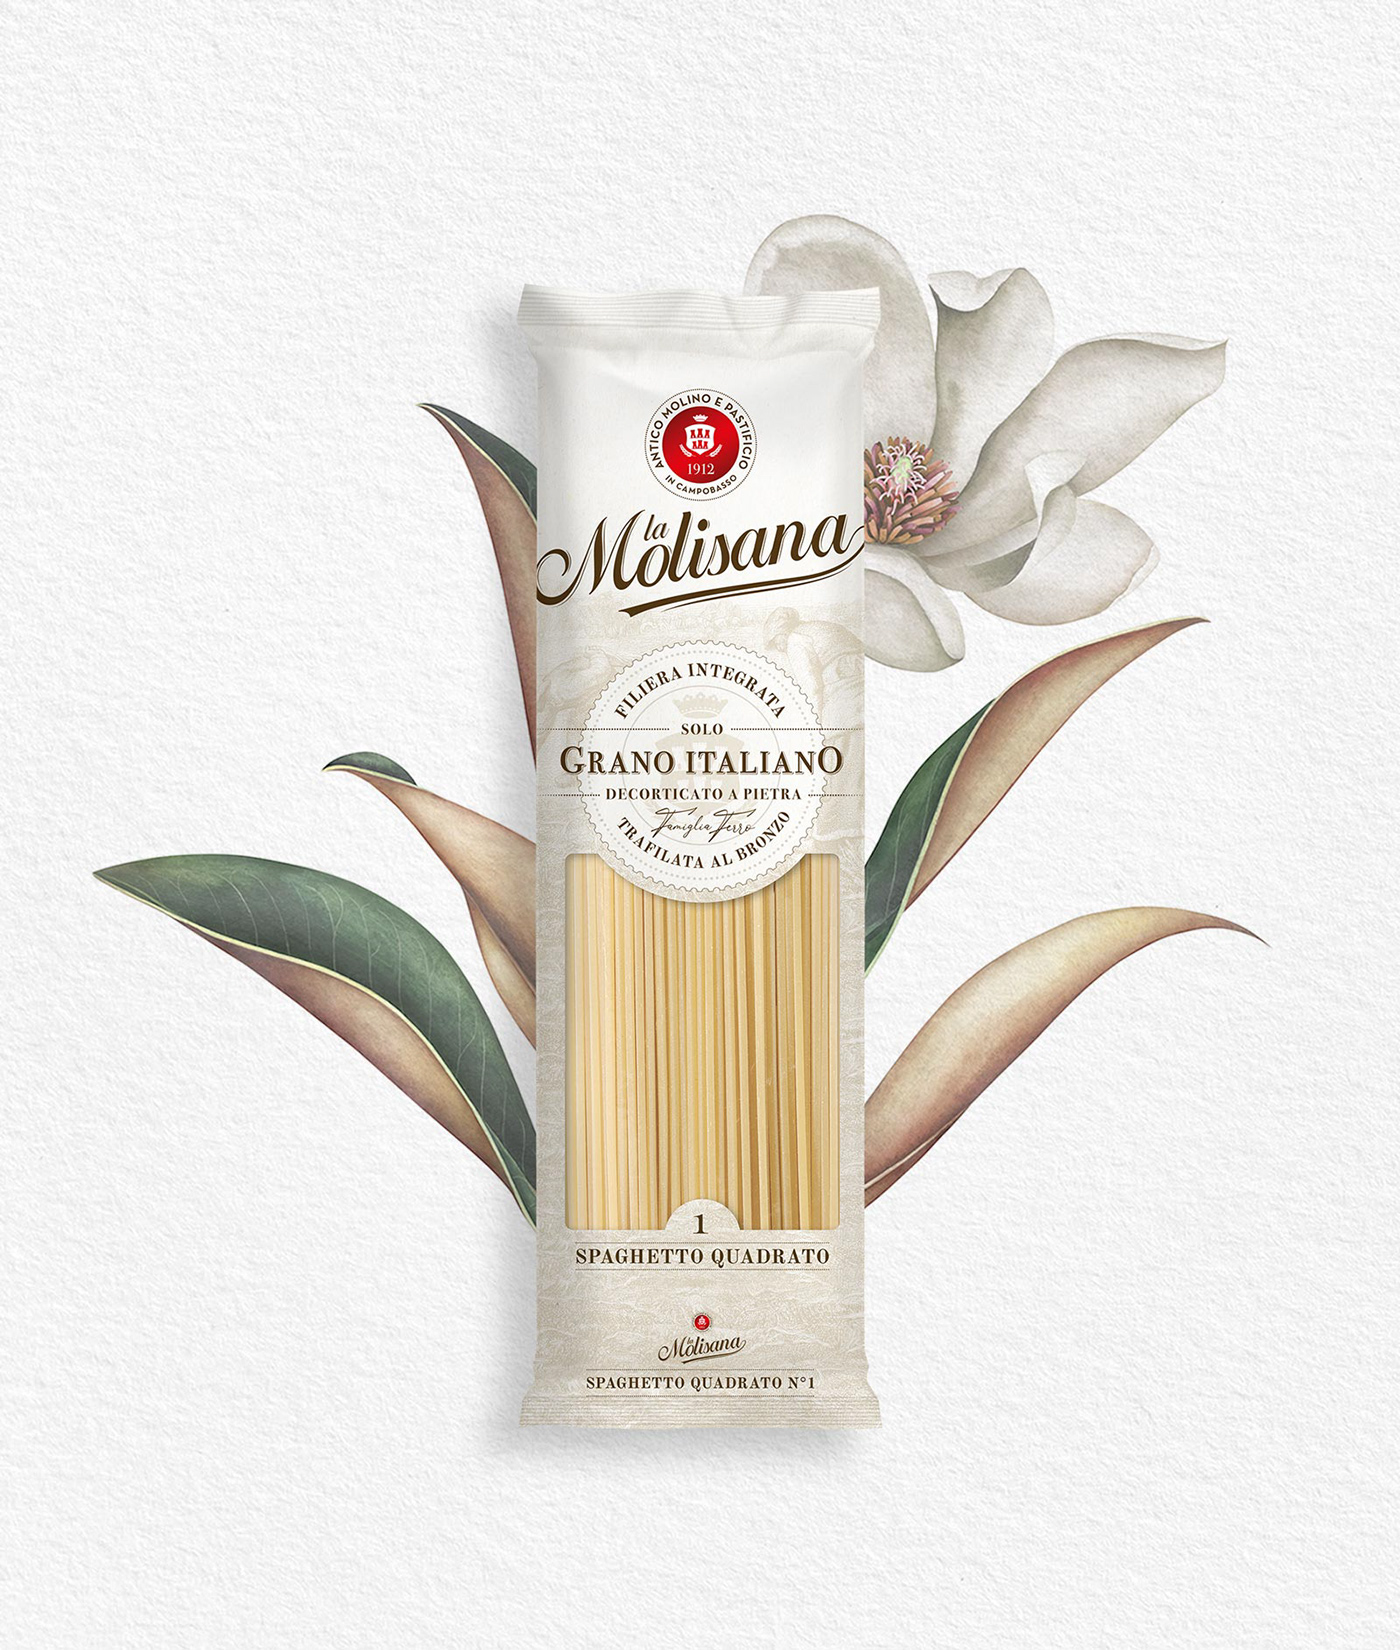 advertisement Advertising  branding  design Food  package package design  Packaging paper Pasta